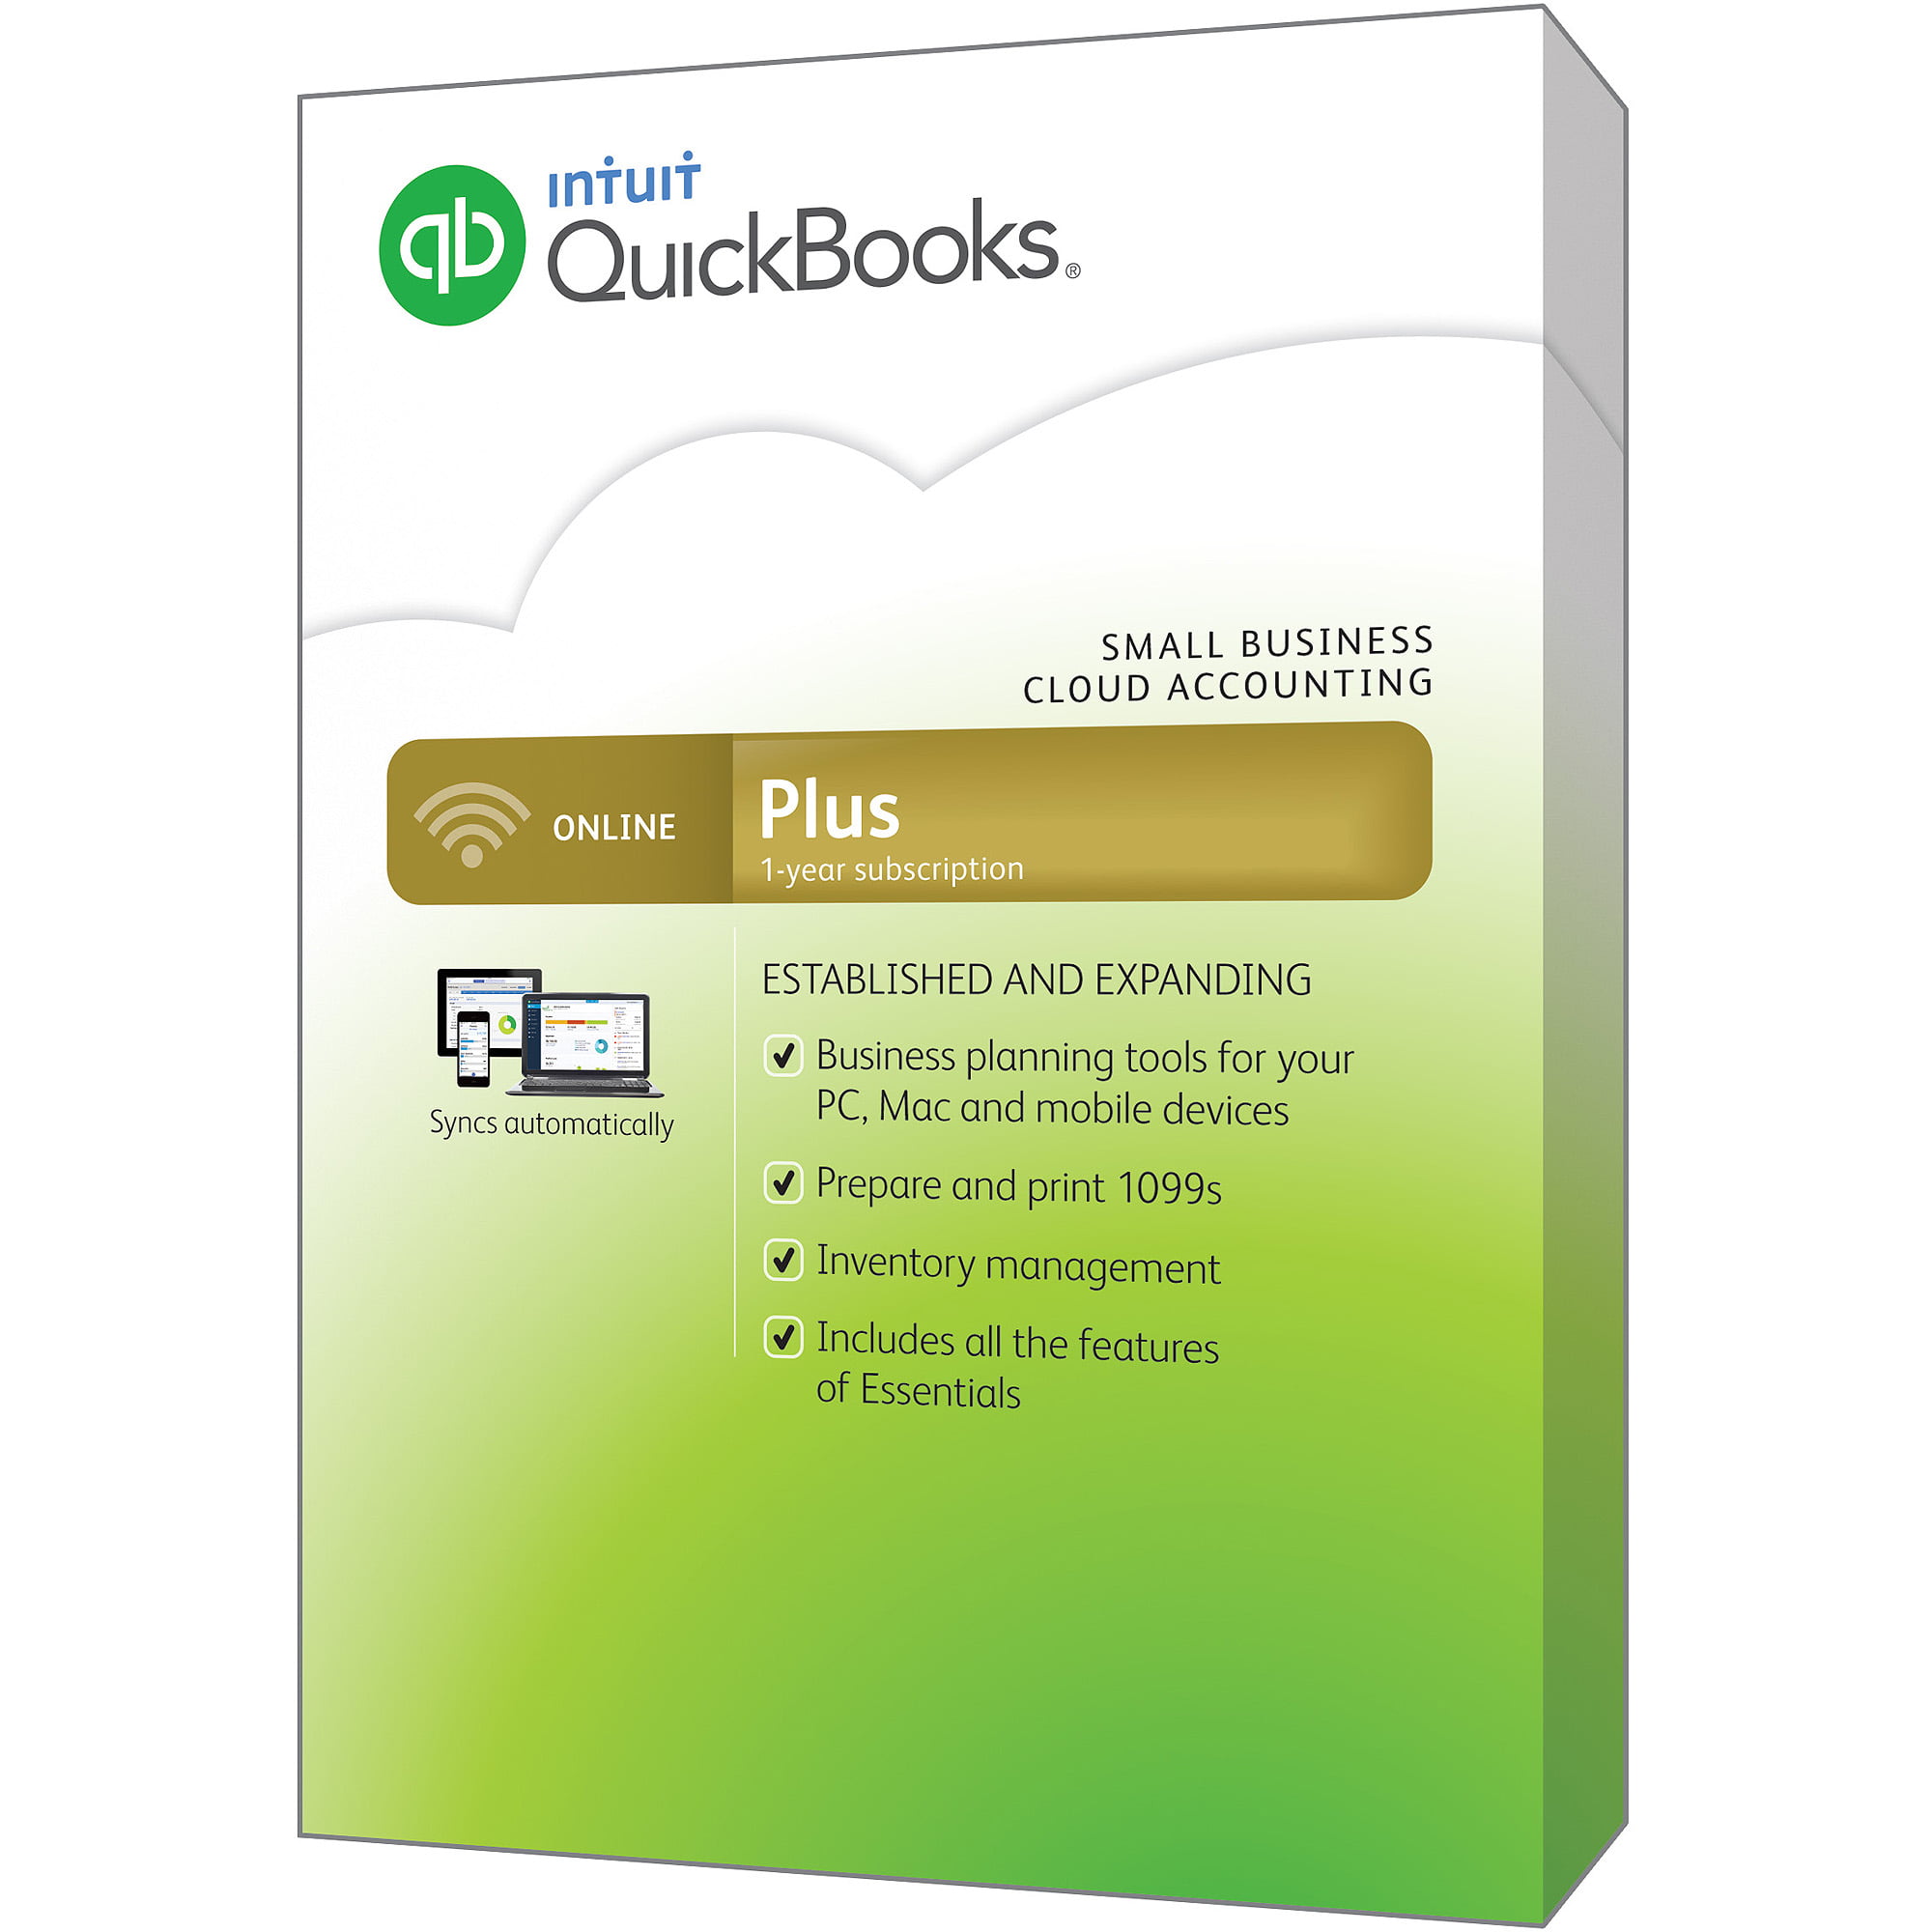 intuit quickbooks download 2015